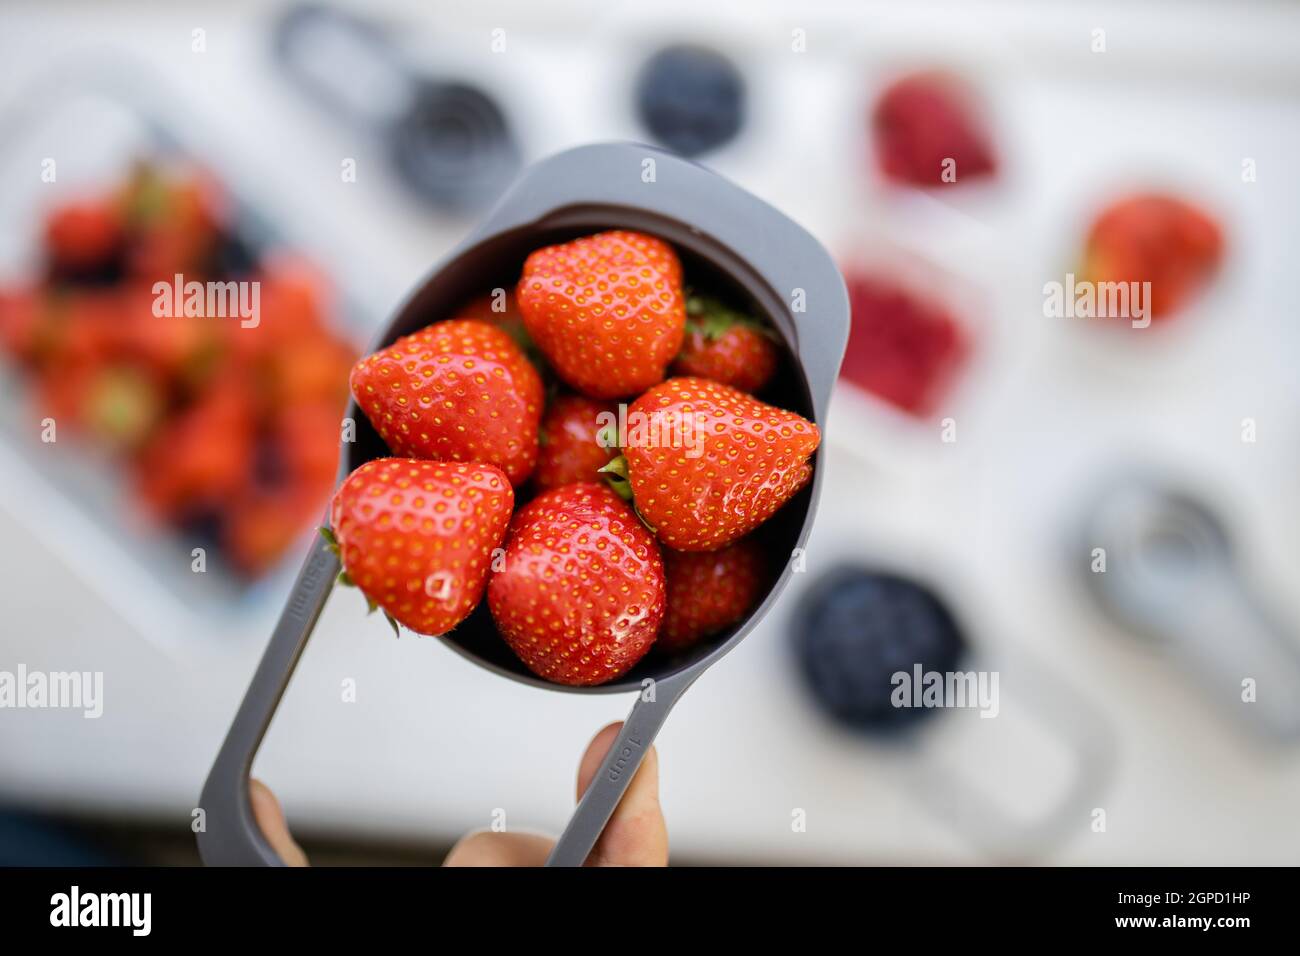 Petite tasse graduée pleine de fraises juteuses au-dessus de fruits plus flous. Baies fraîches et floues dans des récipients en plastique. Préparation de desserts fruités Banque D'Images